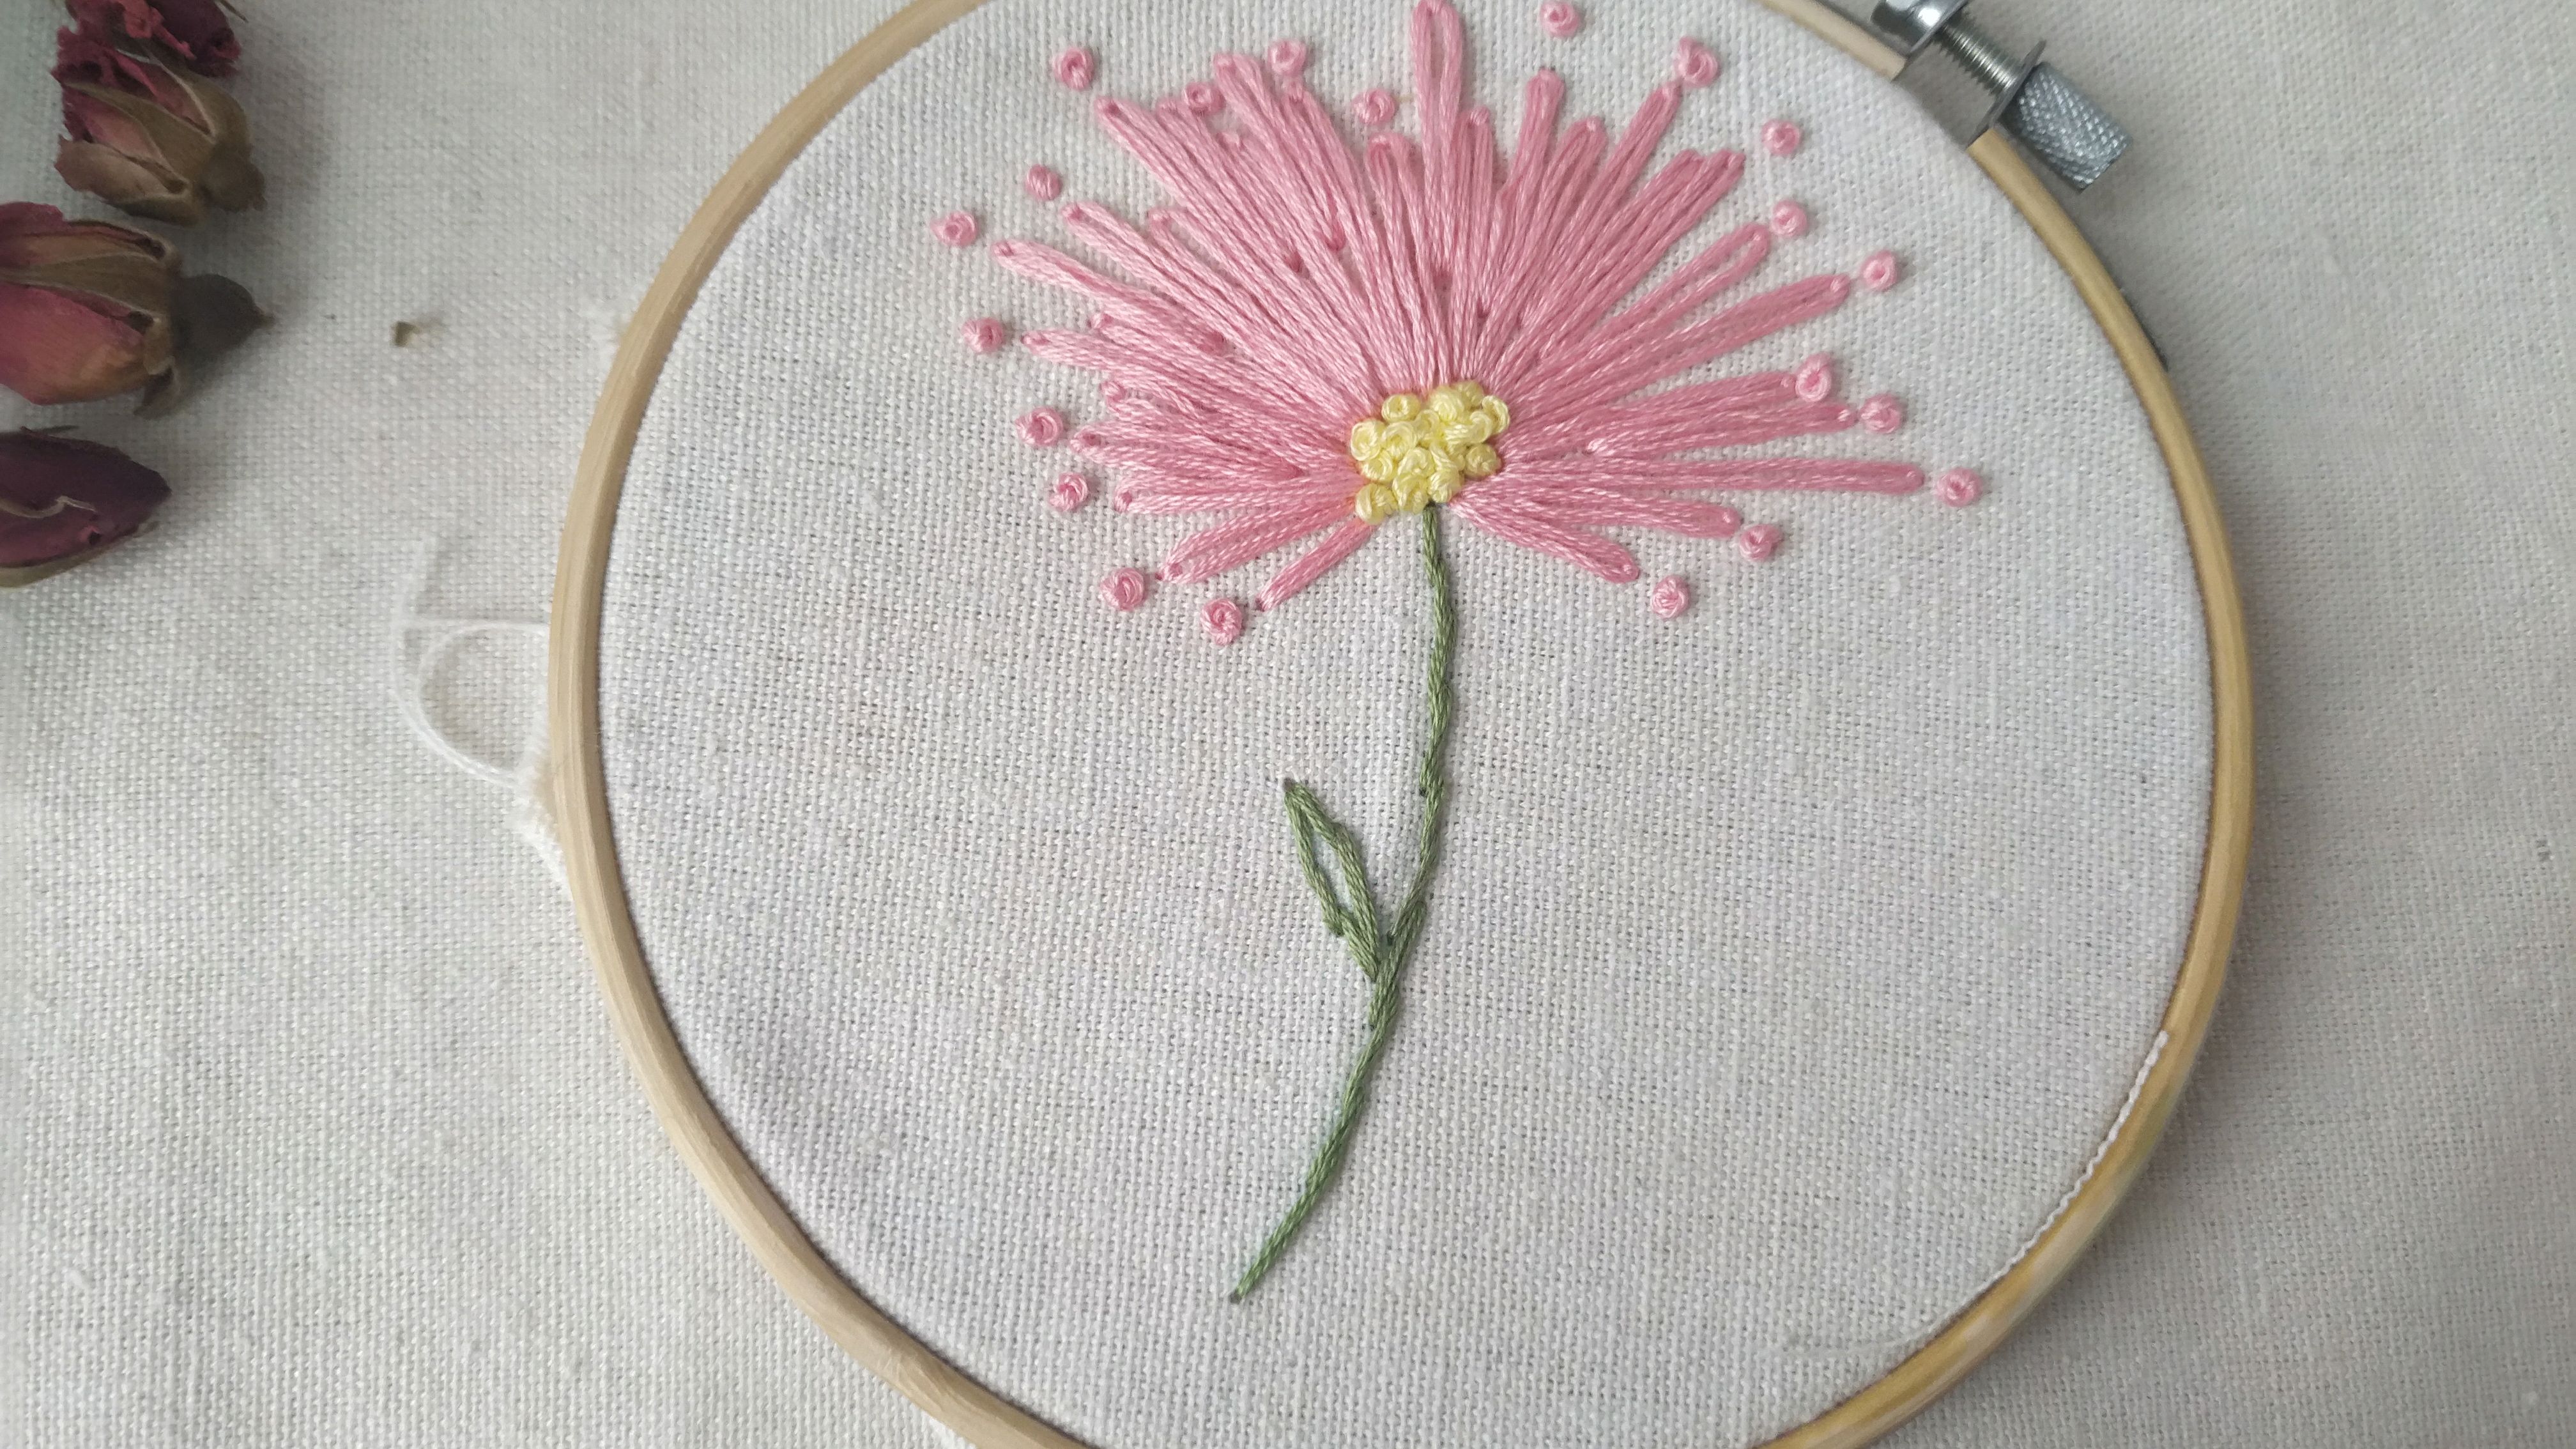 简单的花朵刺绣教程,零基础针法,适合想学刺绣的新手